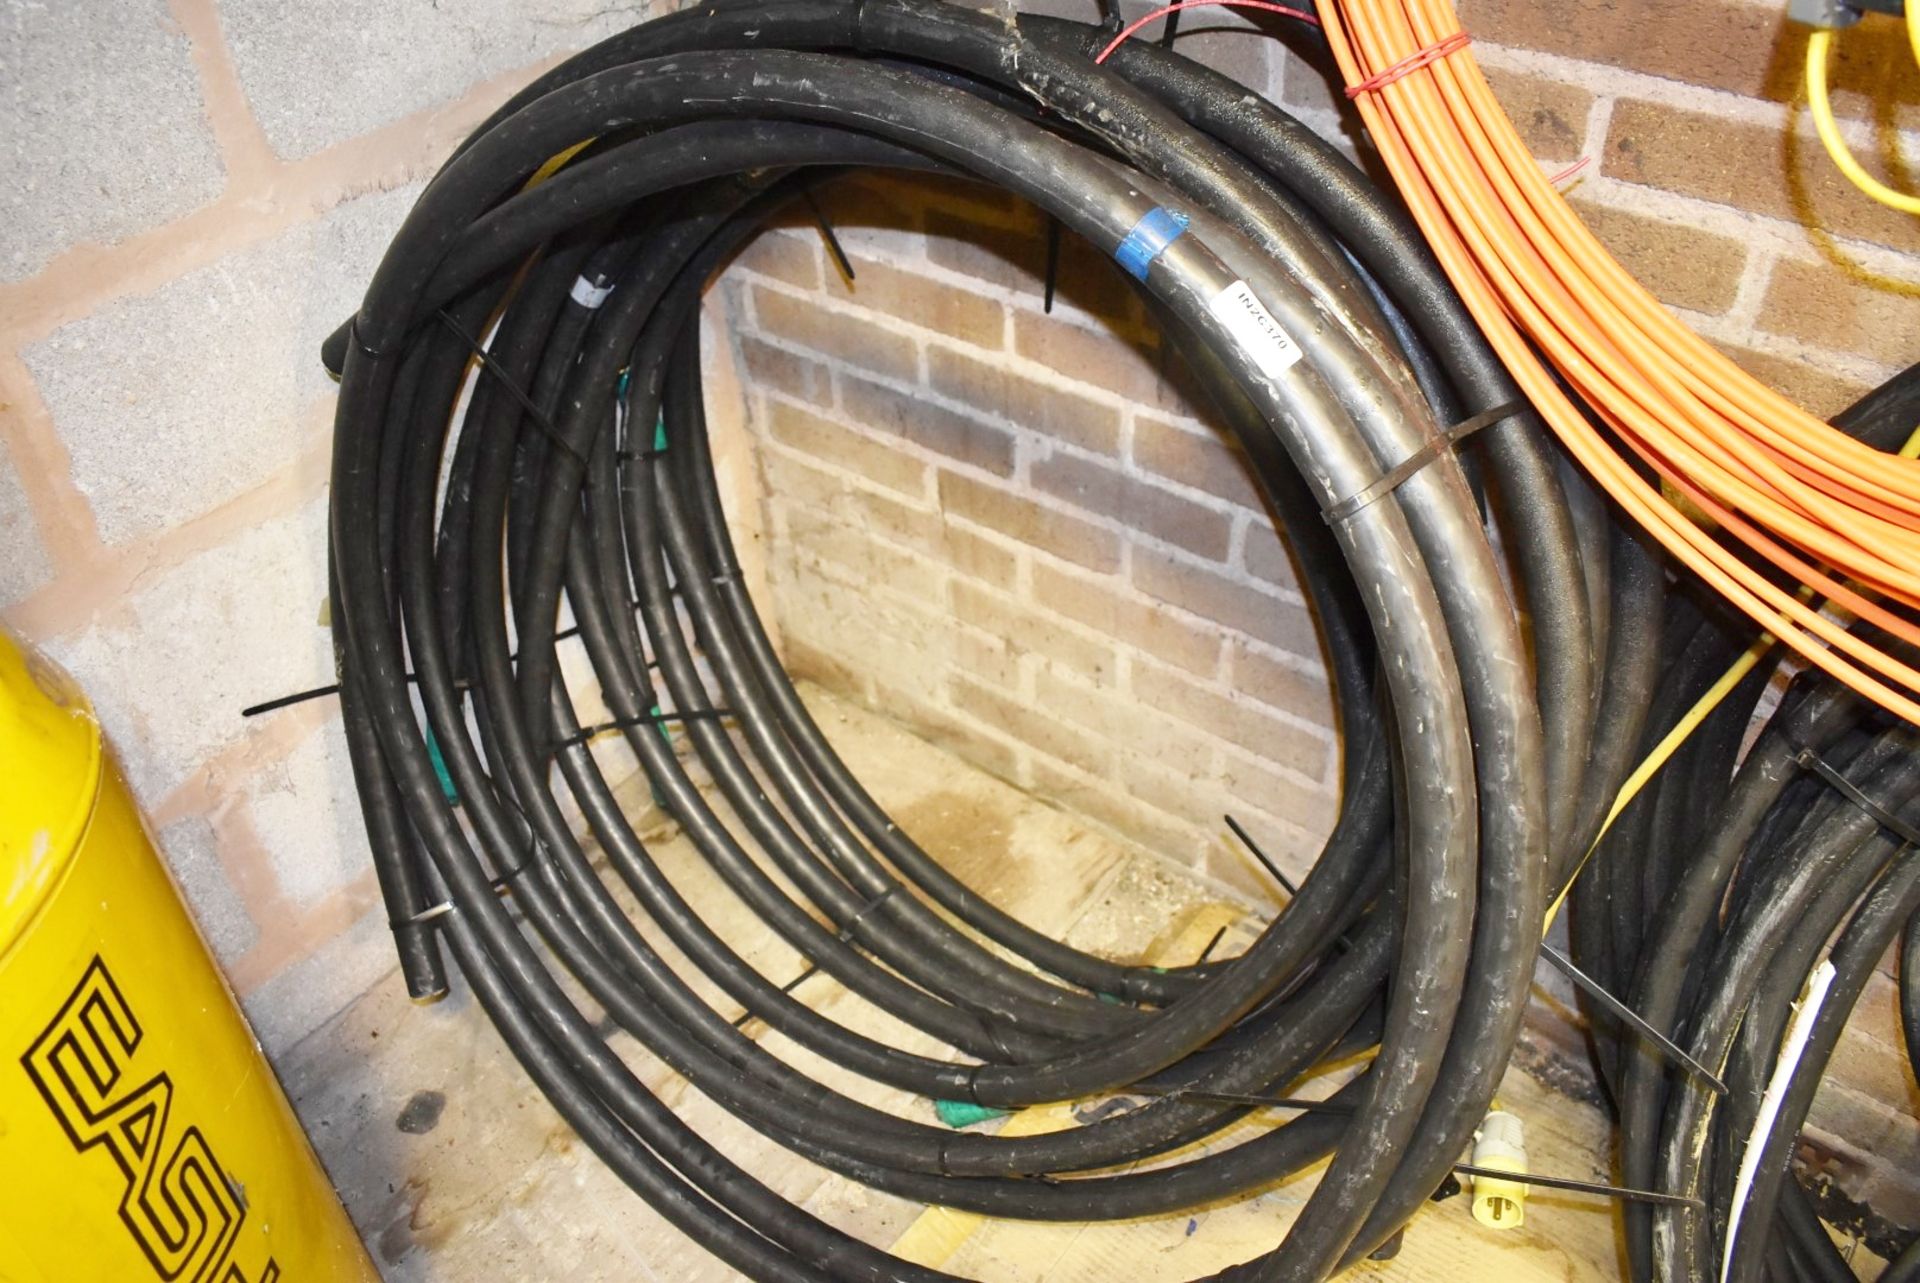 6 x Bundles of Thick Copper Cable - Approx 100cm Diameter Bundles